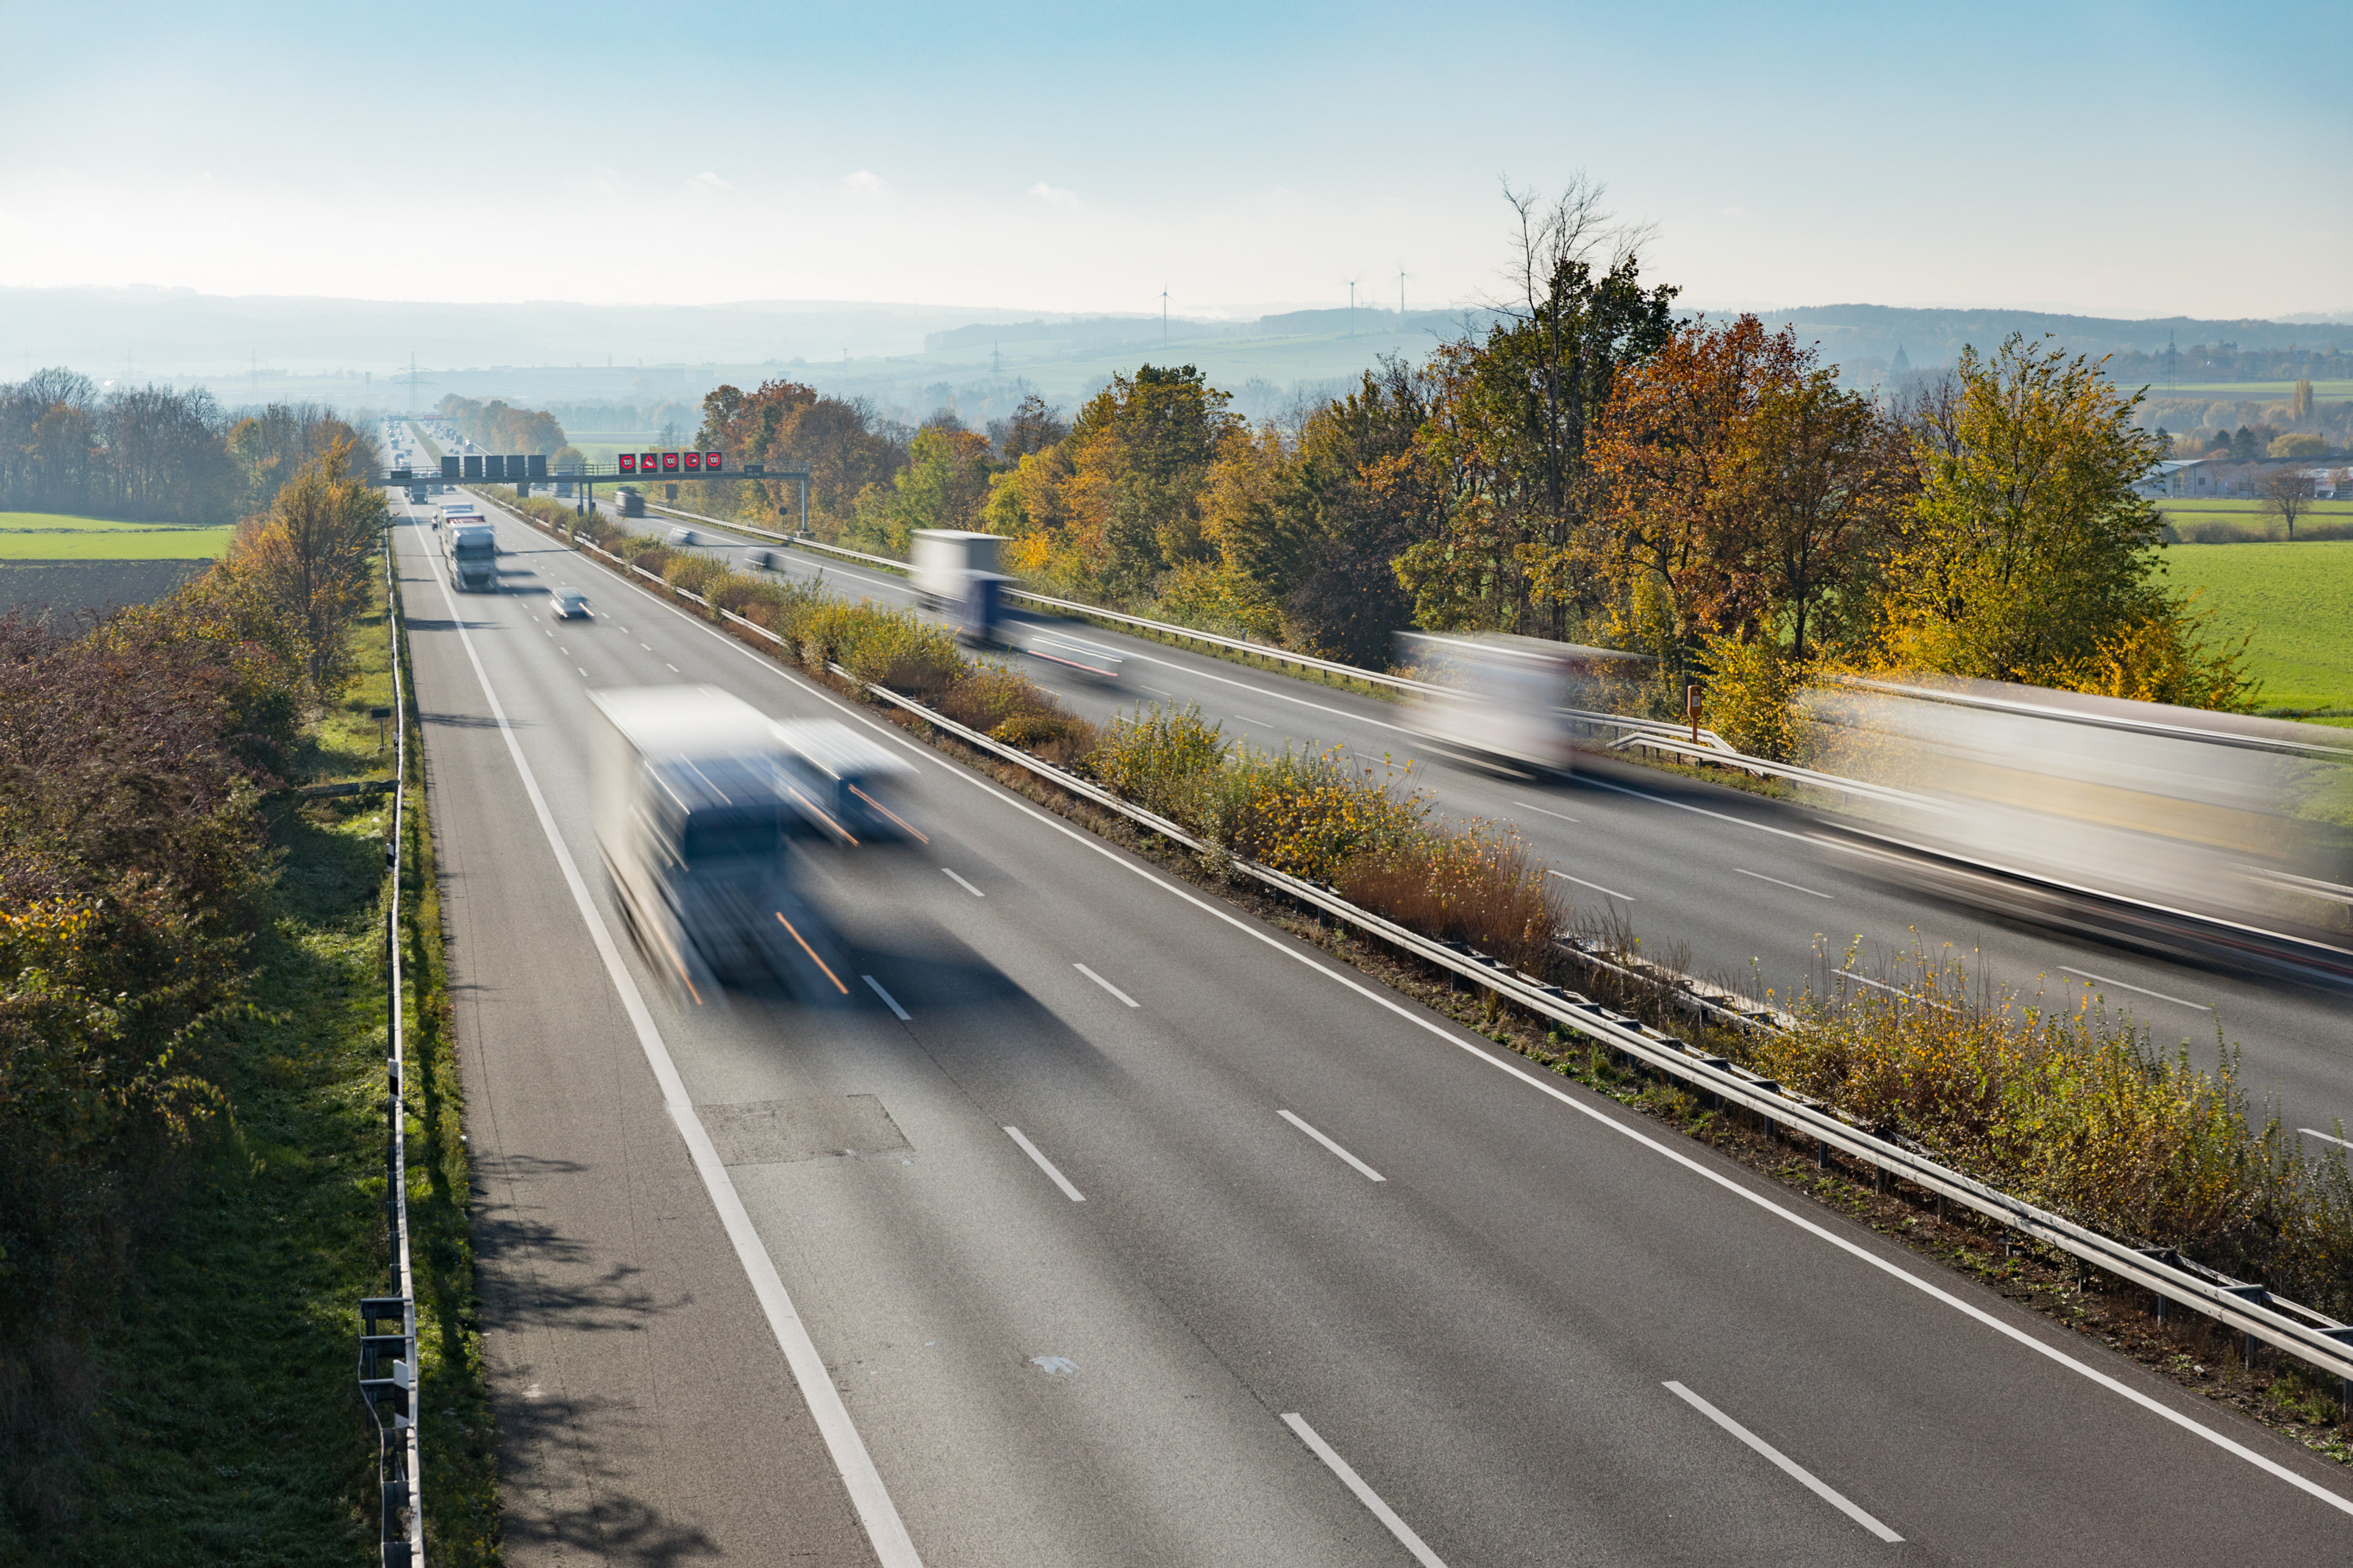 Autobahn in Vogelperspektive mit bewegungsunscharfen Fahrzeugen umgeben von grüner Landschaft